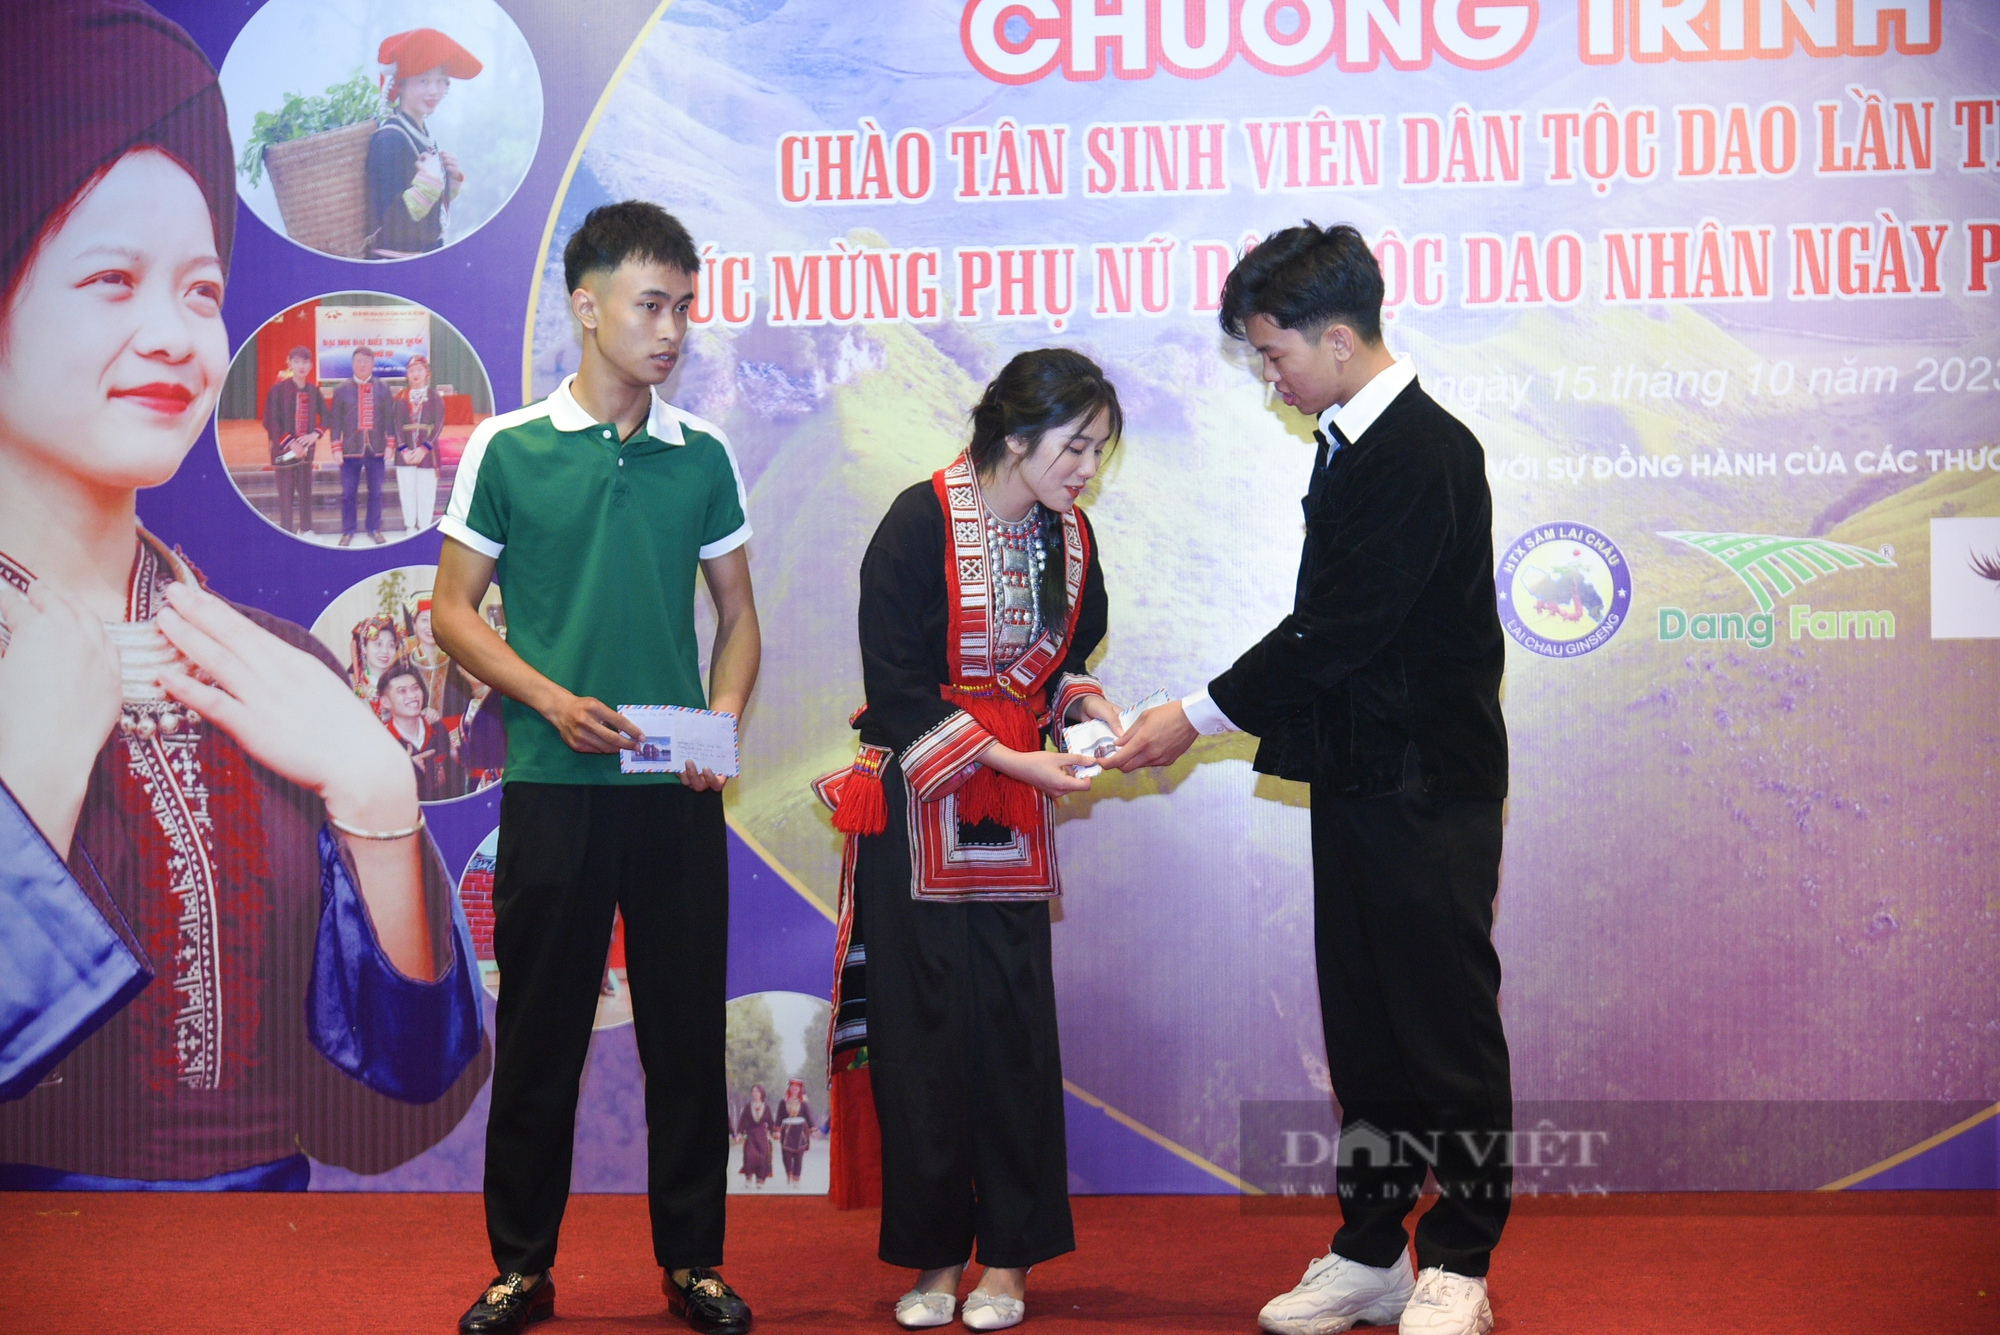 Đủ cung bậc cảm xúc tại lễ chào đón tân sinh viên dân tộc Dao tại Hà Nội lần thứ 3 - Ảnh 5.